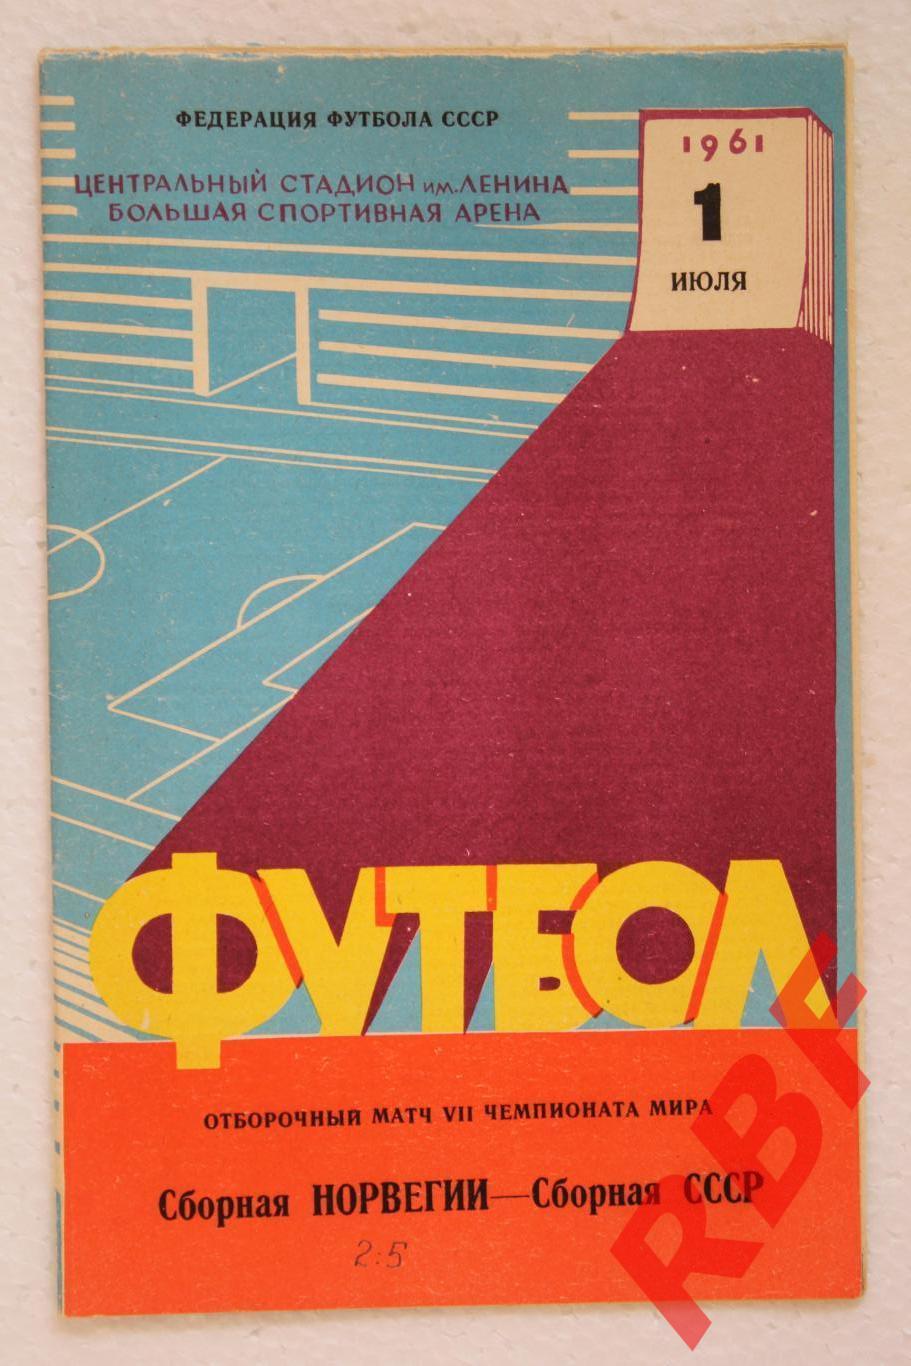 СССР - Норвегия,1 июля 1961.Отборочный матч чемпионата мира